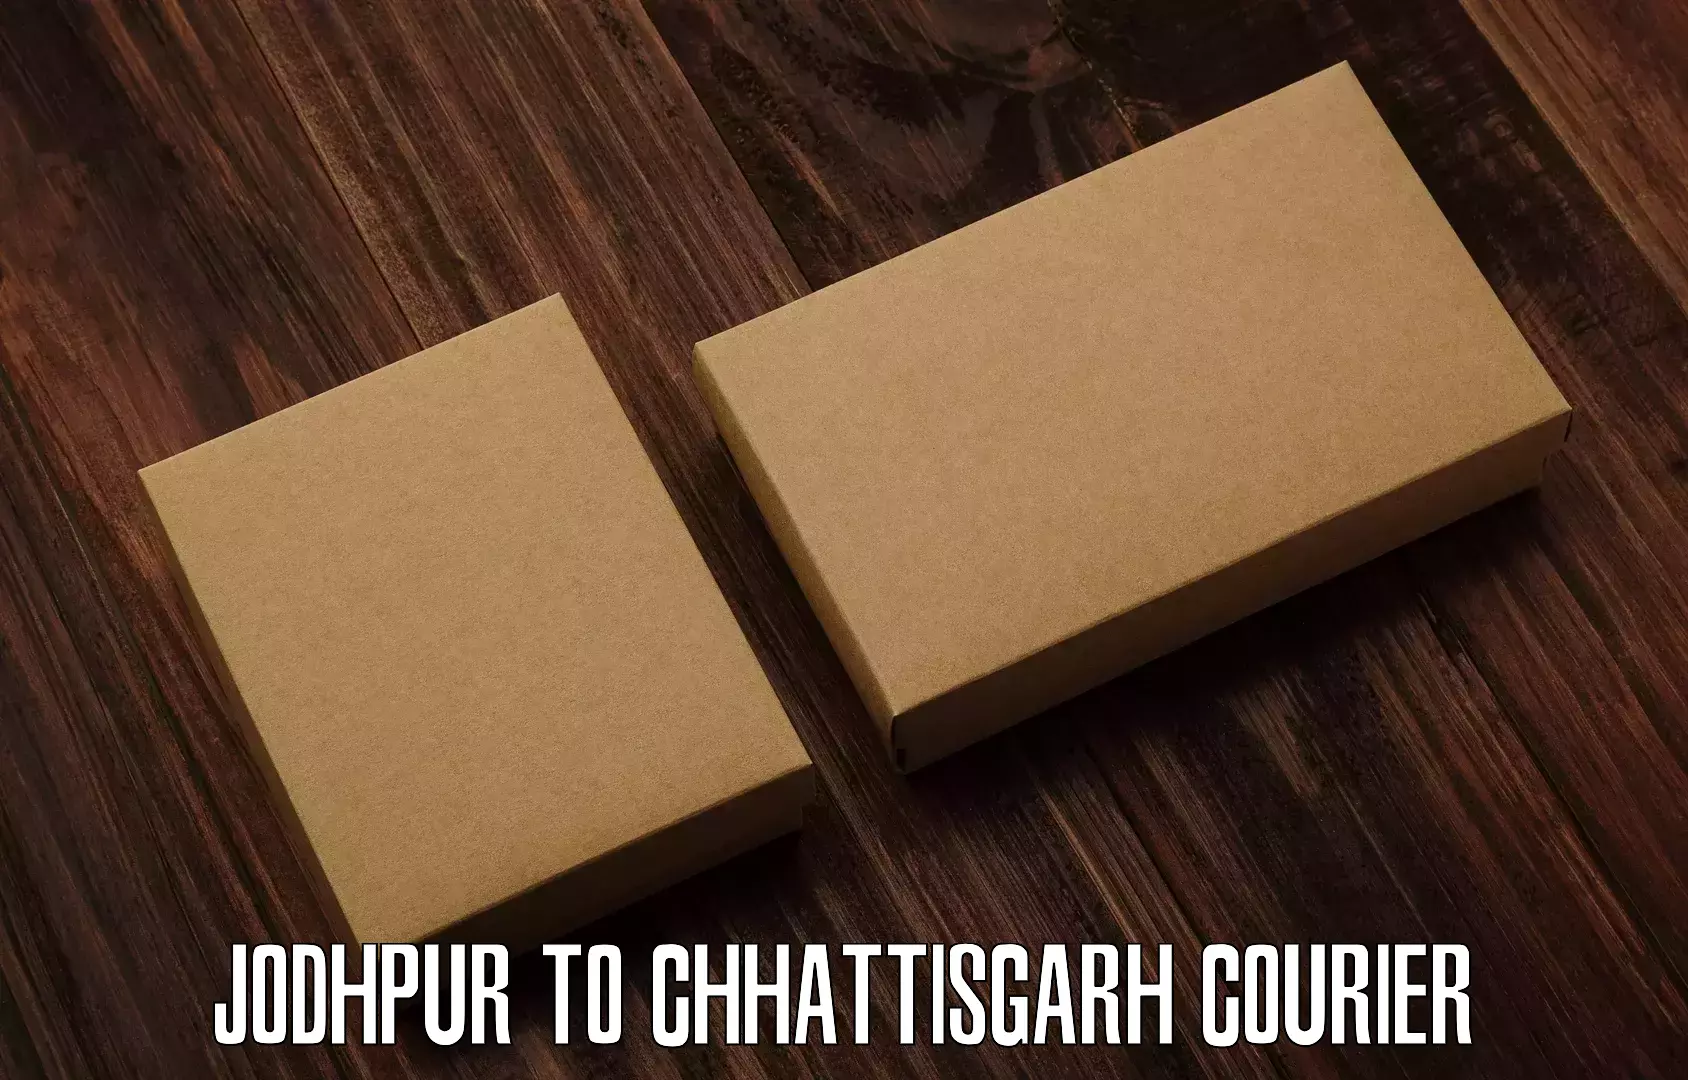 Cash on delivery service Jodhpur to Korba